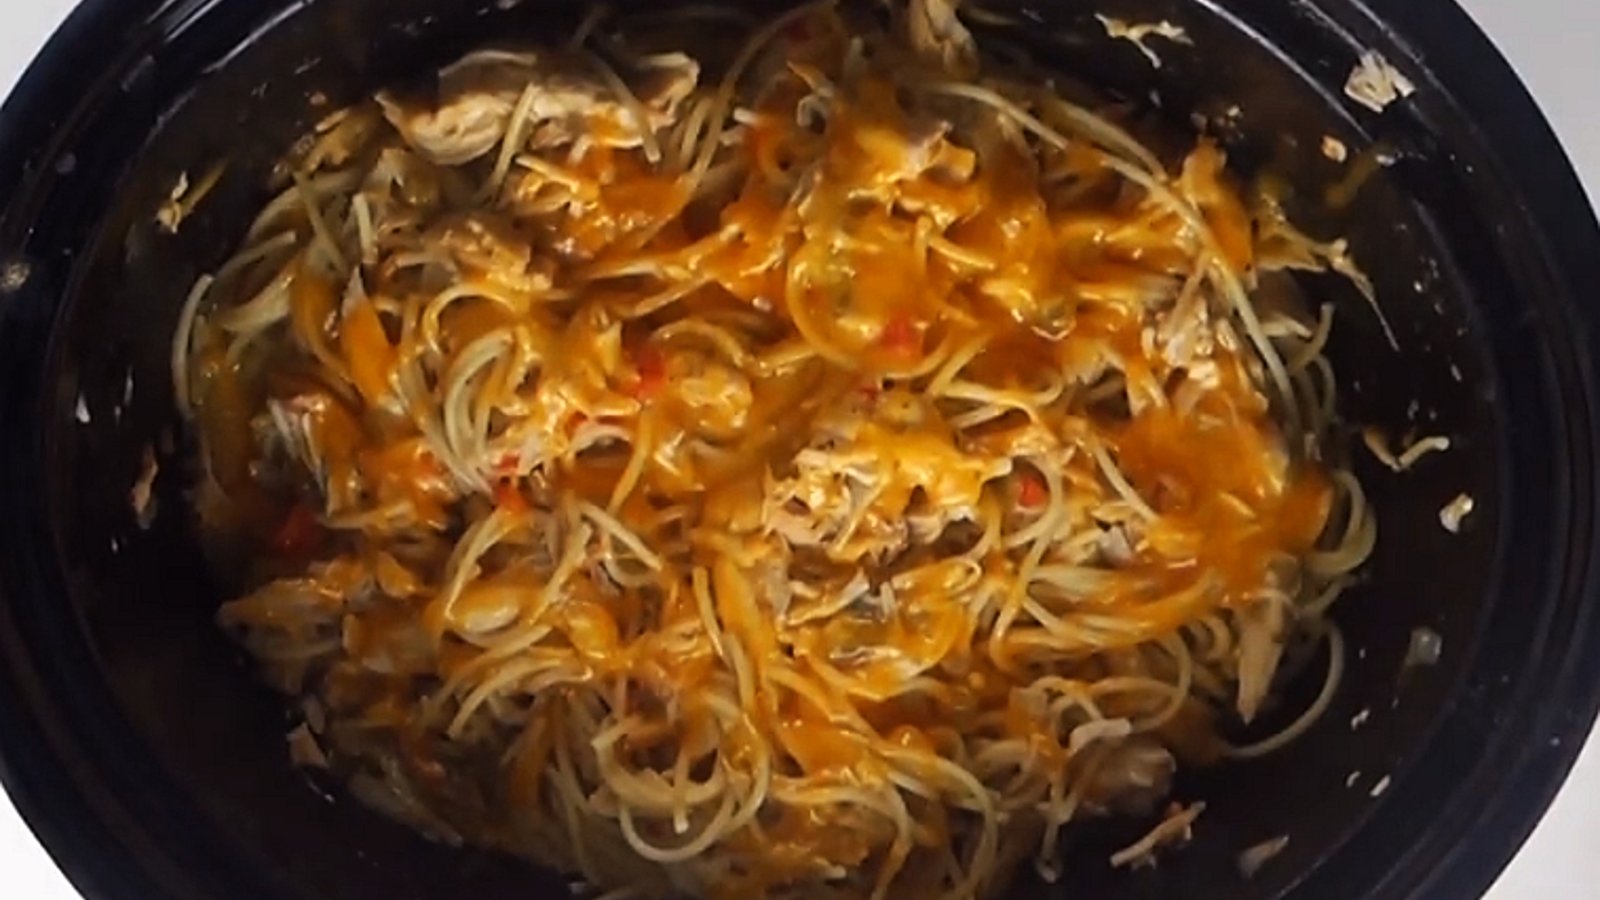 Spaghetti au poulet crémeux cuit à la mijoteuse